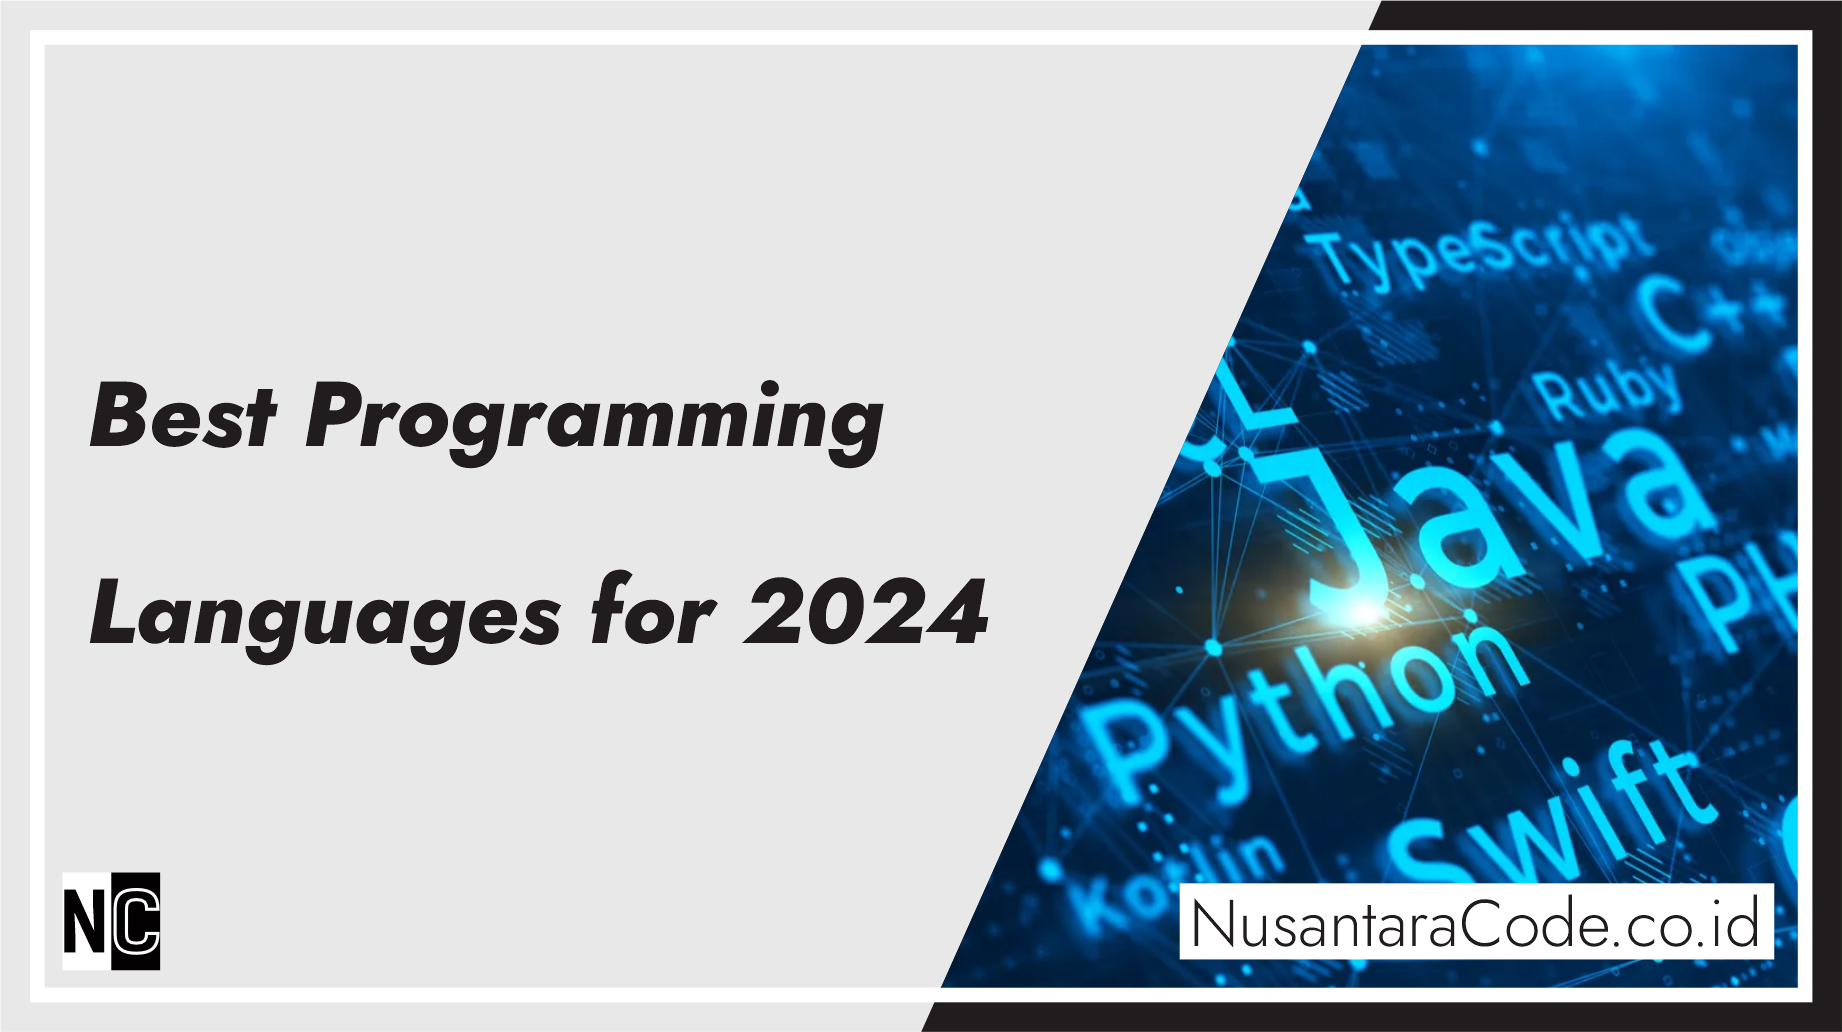 Nusantara Code Best Programming Languages For 2024 